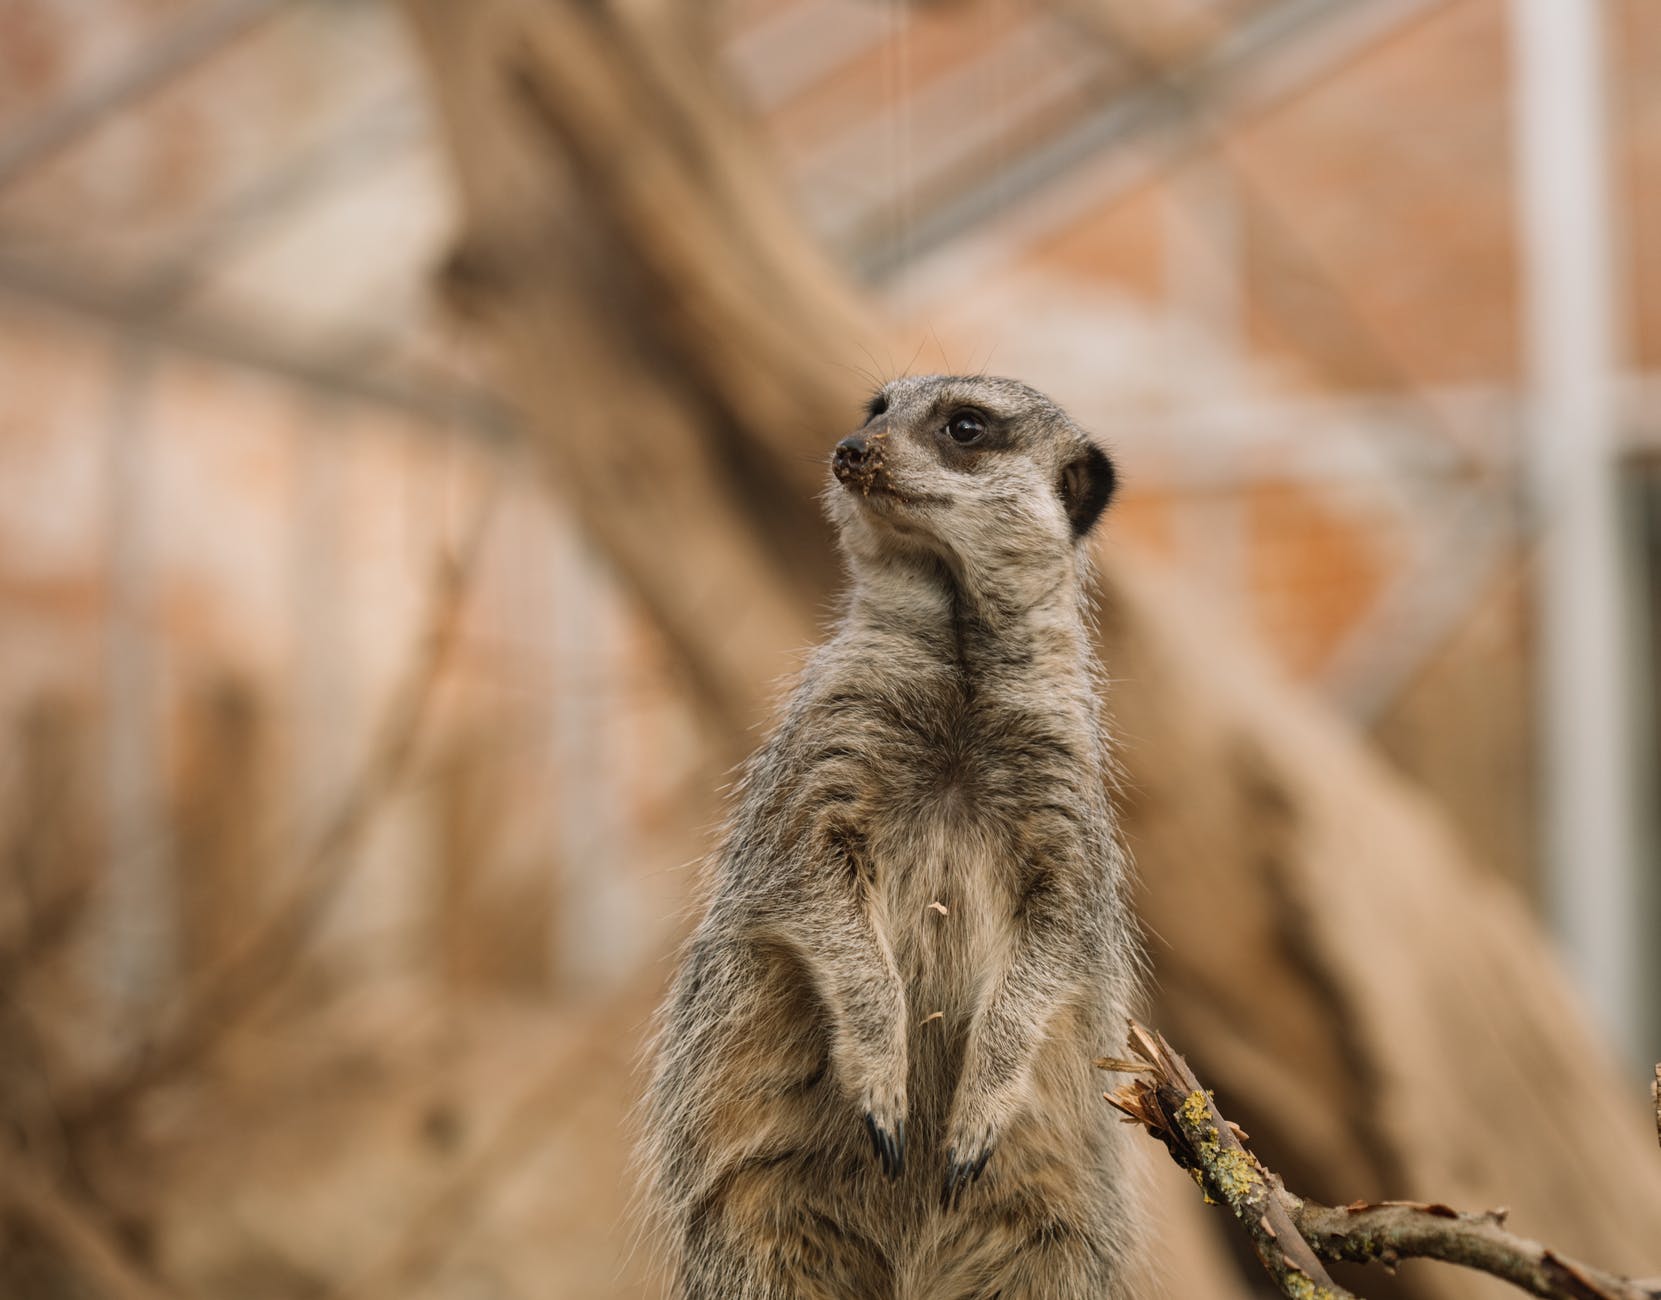 cute meerkat standing in zoo enclosure